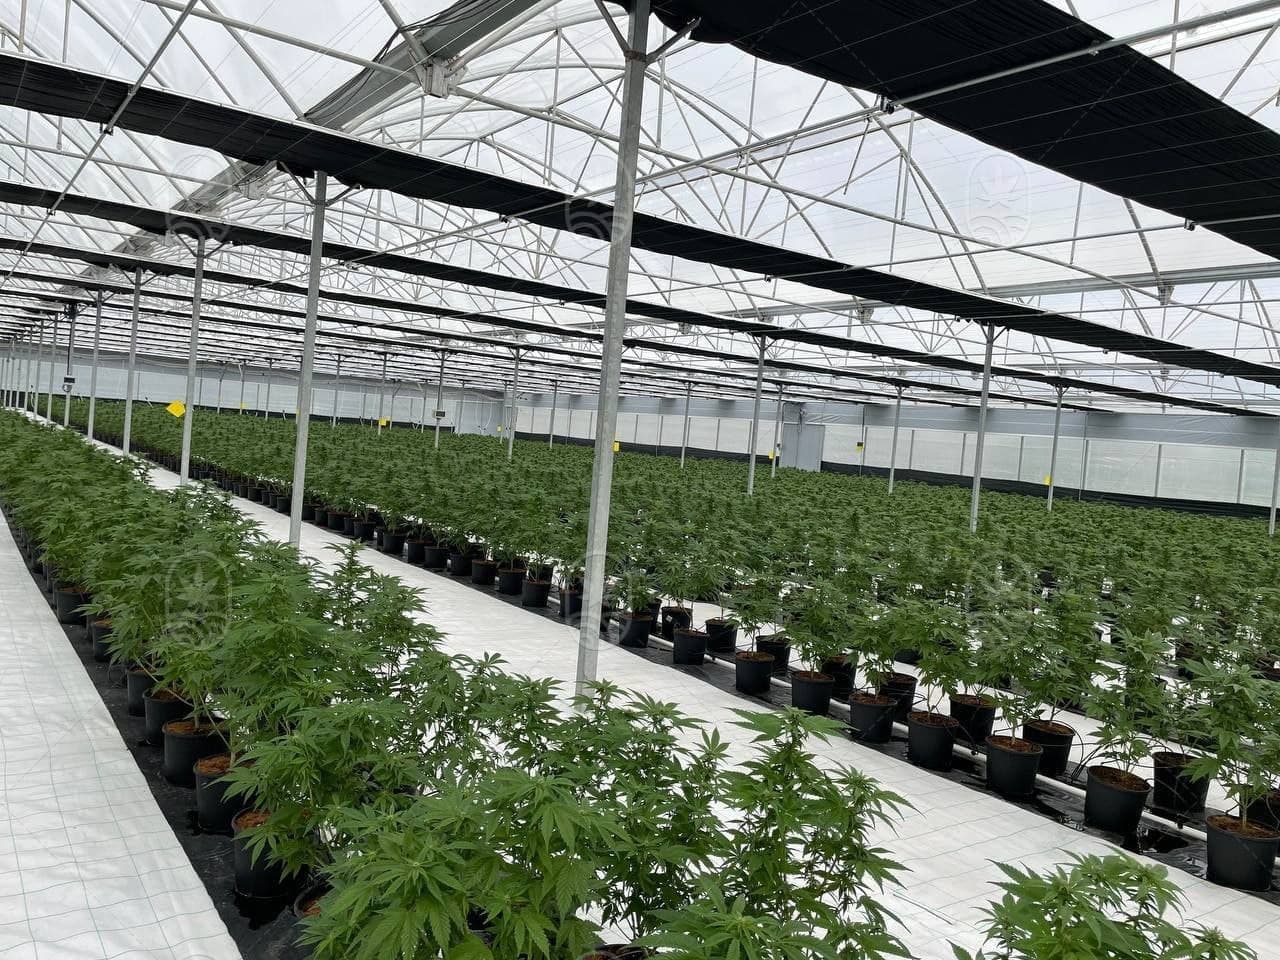 JuicyFields - Din cannabisplante kunne også vokse her